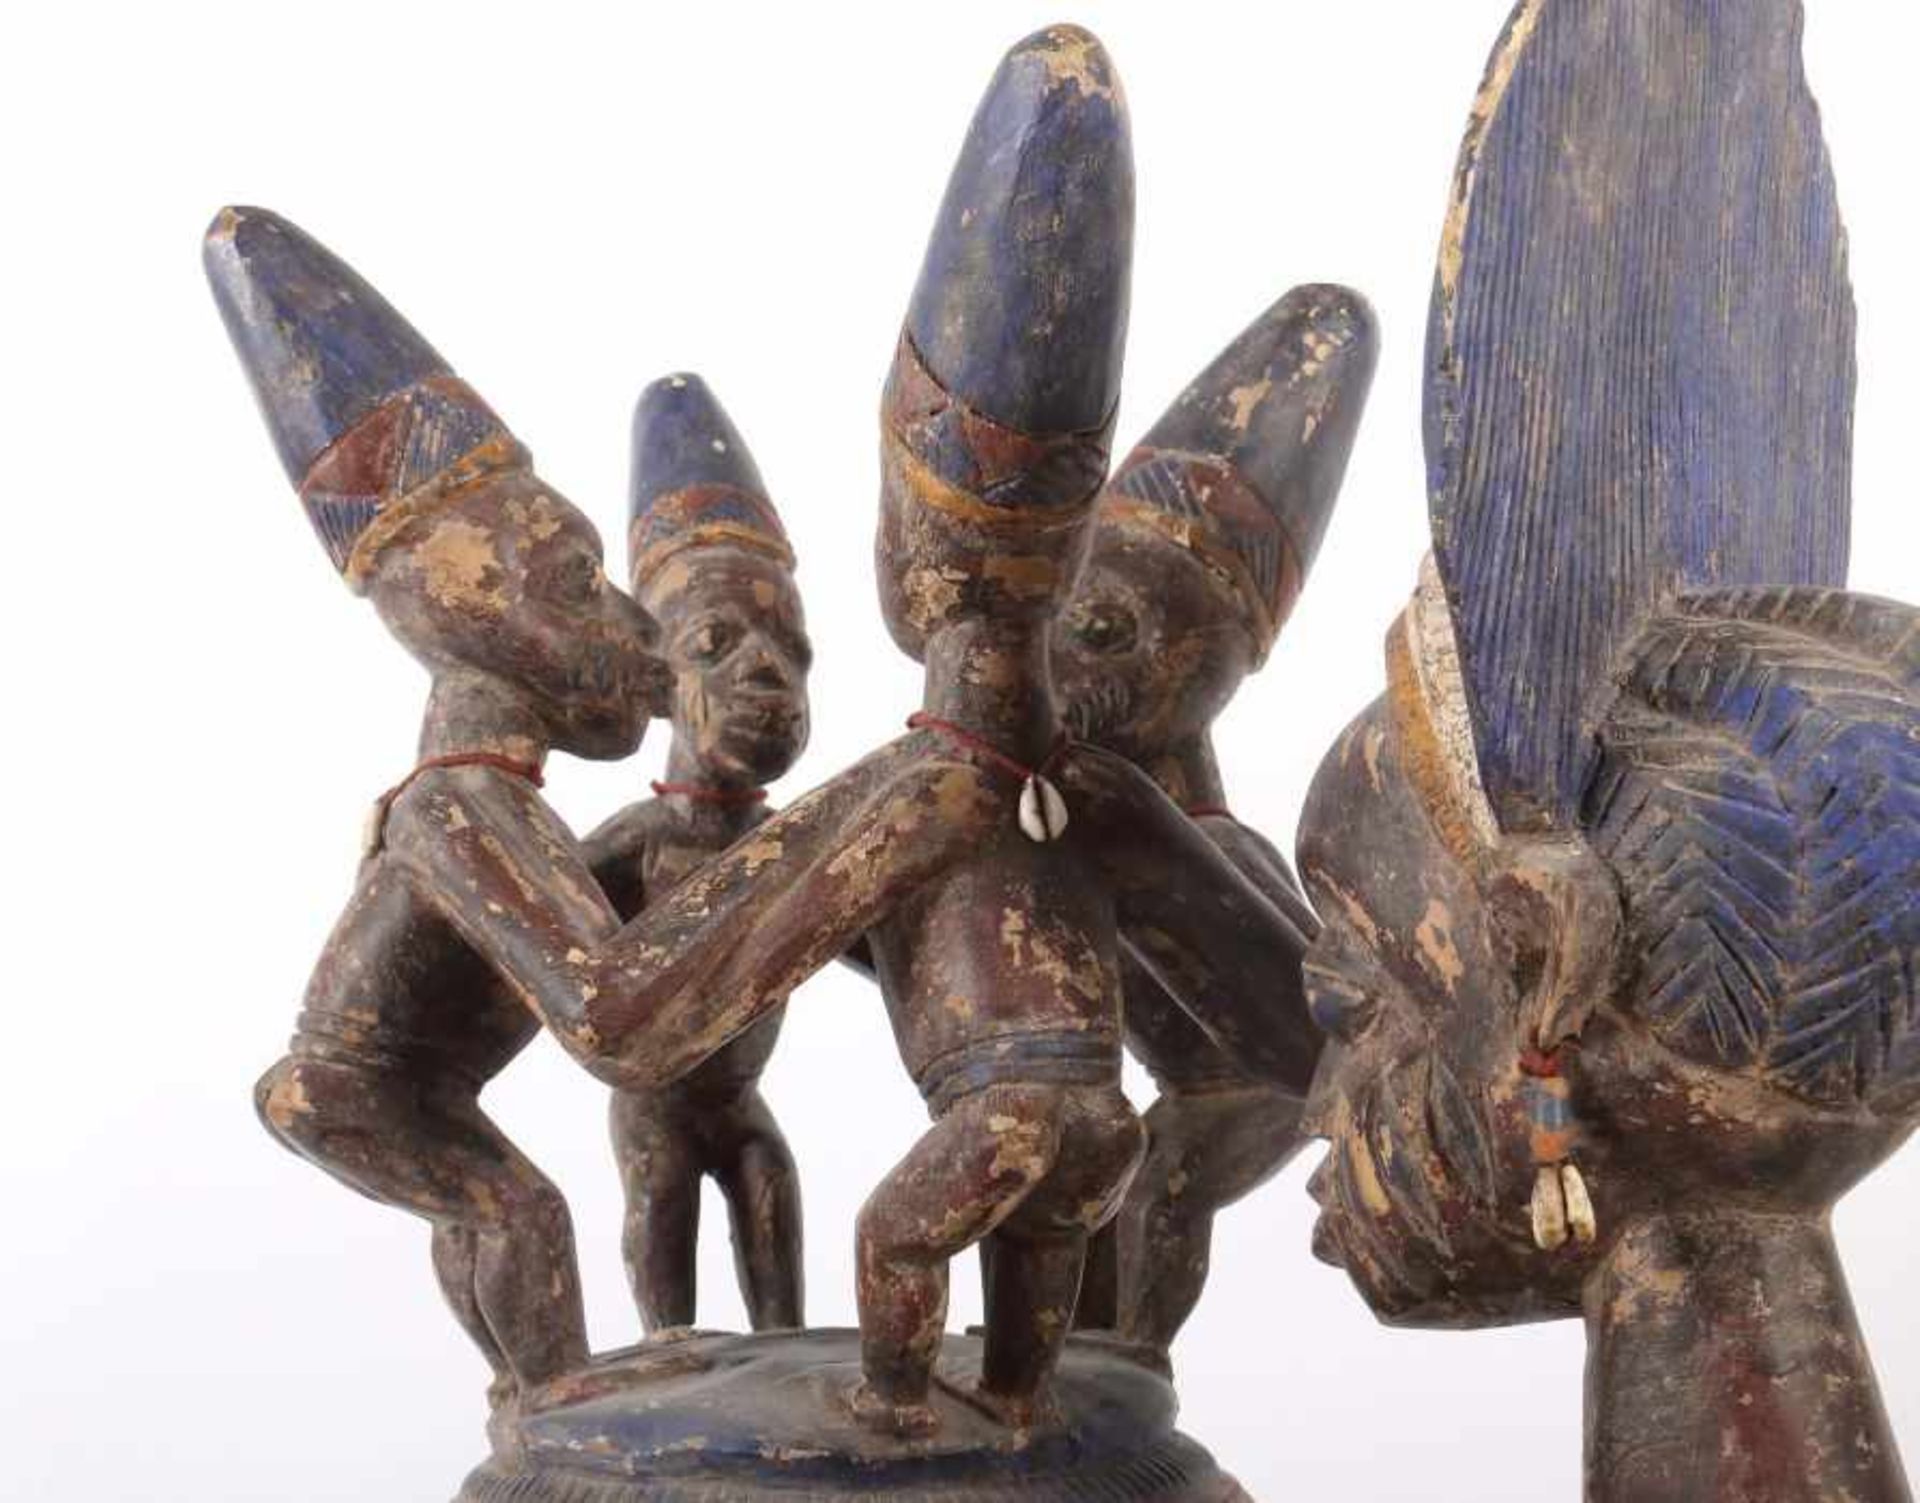 Großes Olumeye-GefäßNigeria, Stamm der Yoruba, 5 Trägerfiguren und 1 große Mutterfigur mit Kind - Image 6 of 10